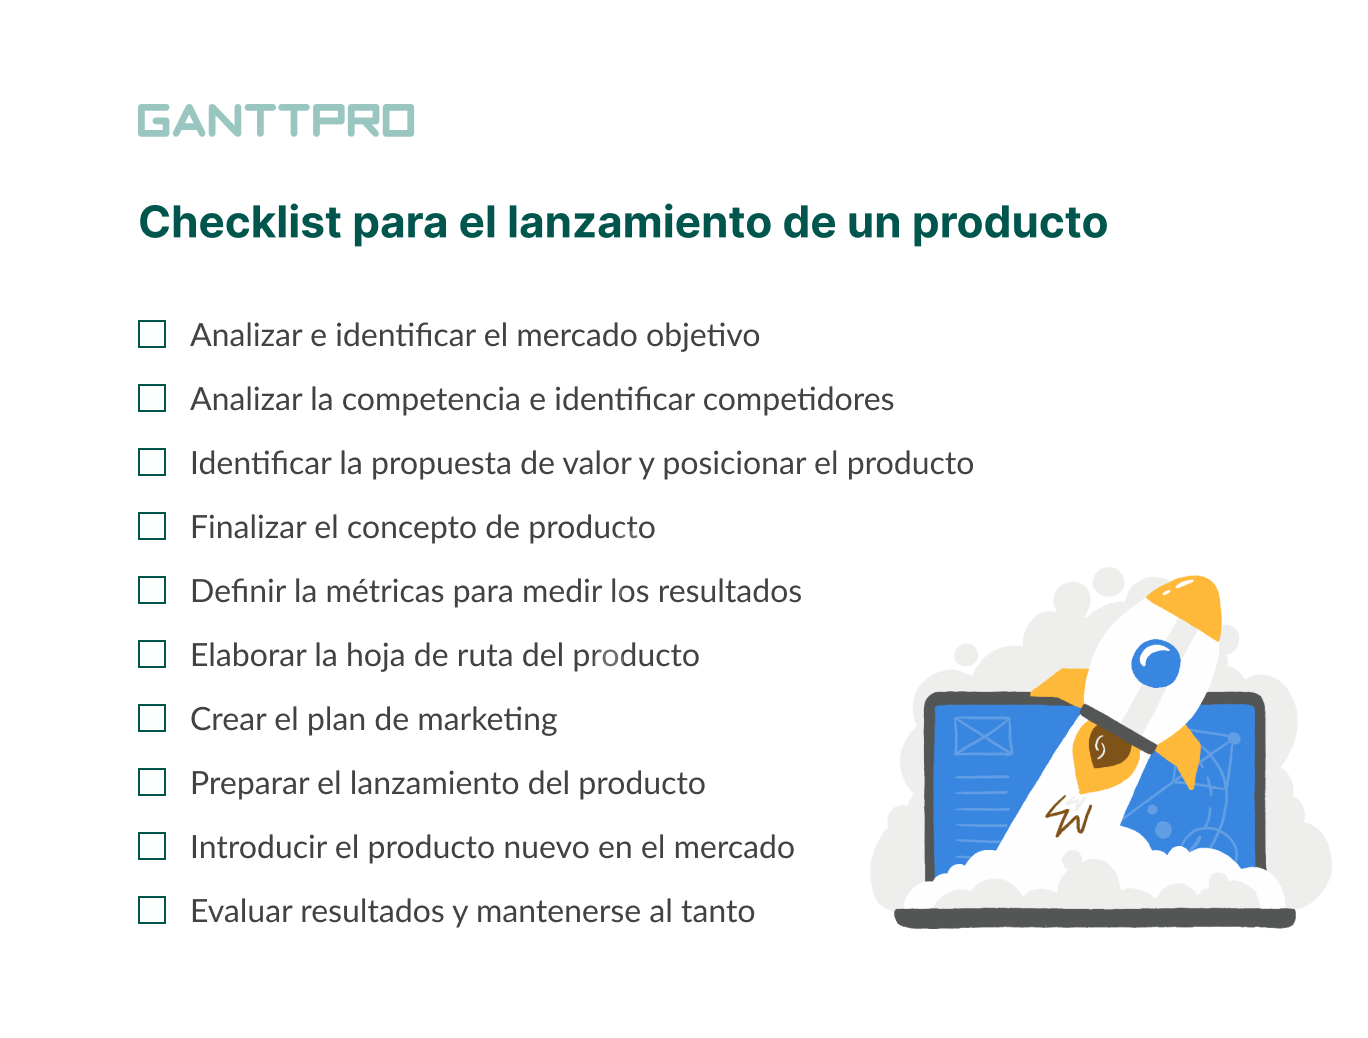 como lanzar un producto al mercado ejemplo checklist